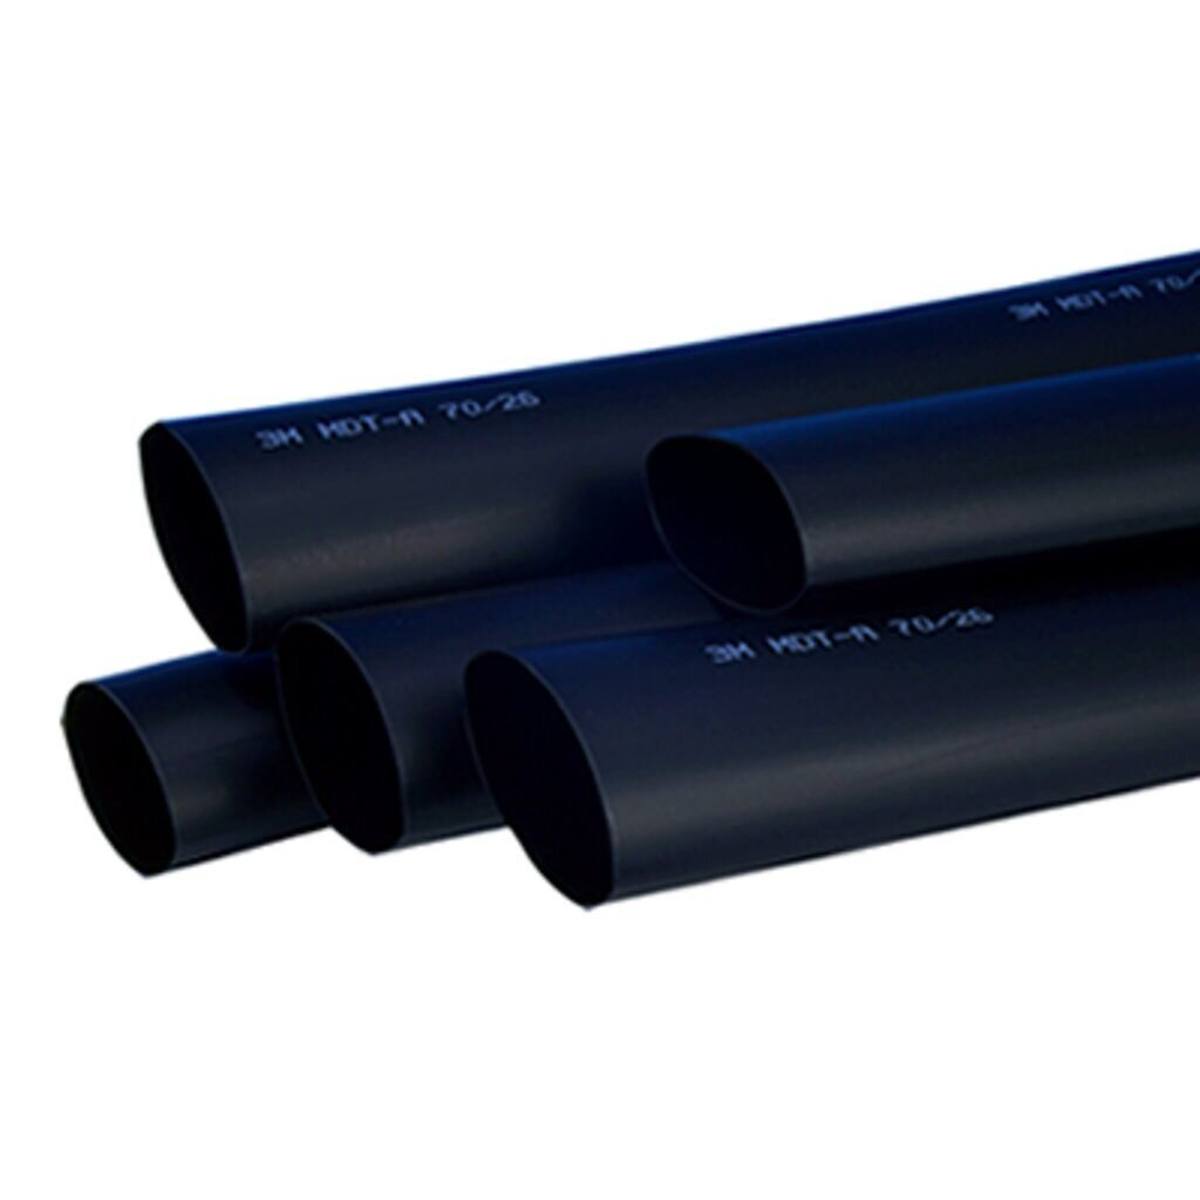 3M MDT-A Tubo termorestringente a parete media con adesivo, nero, 70/26 mm, 1 m